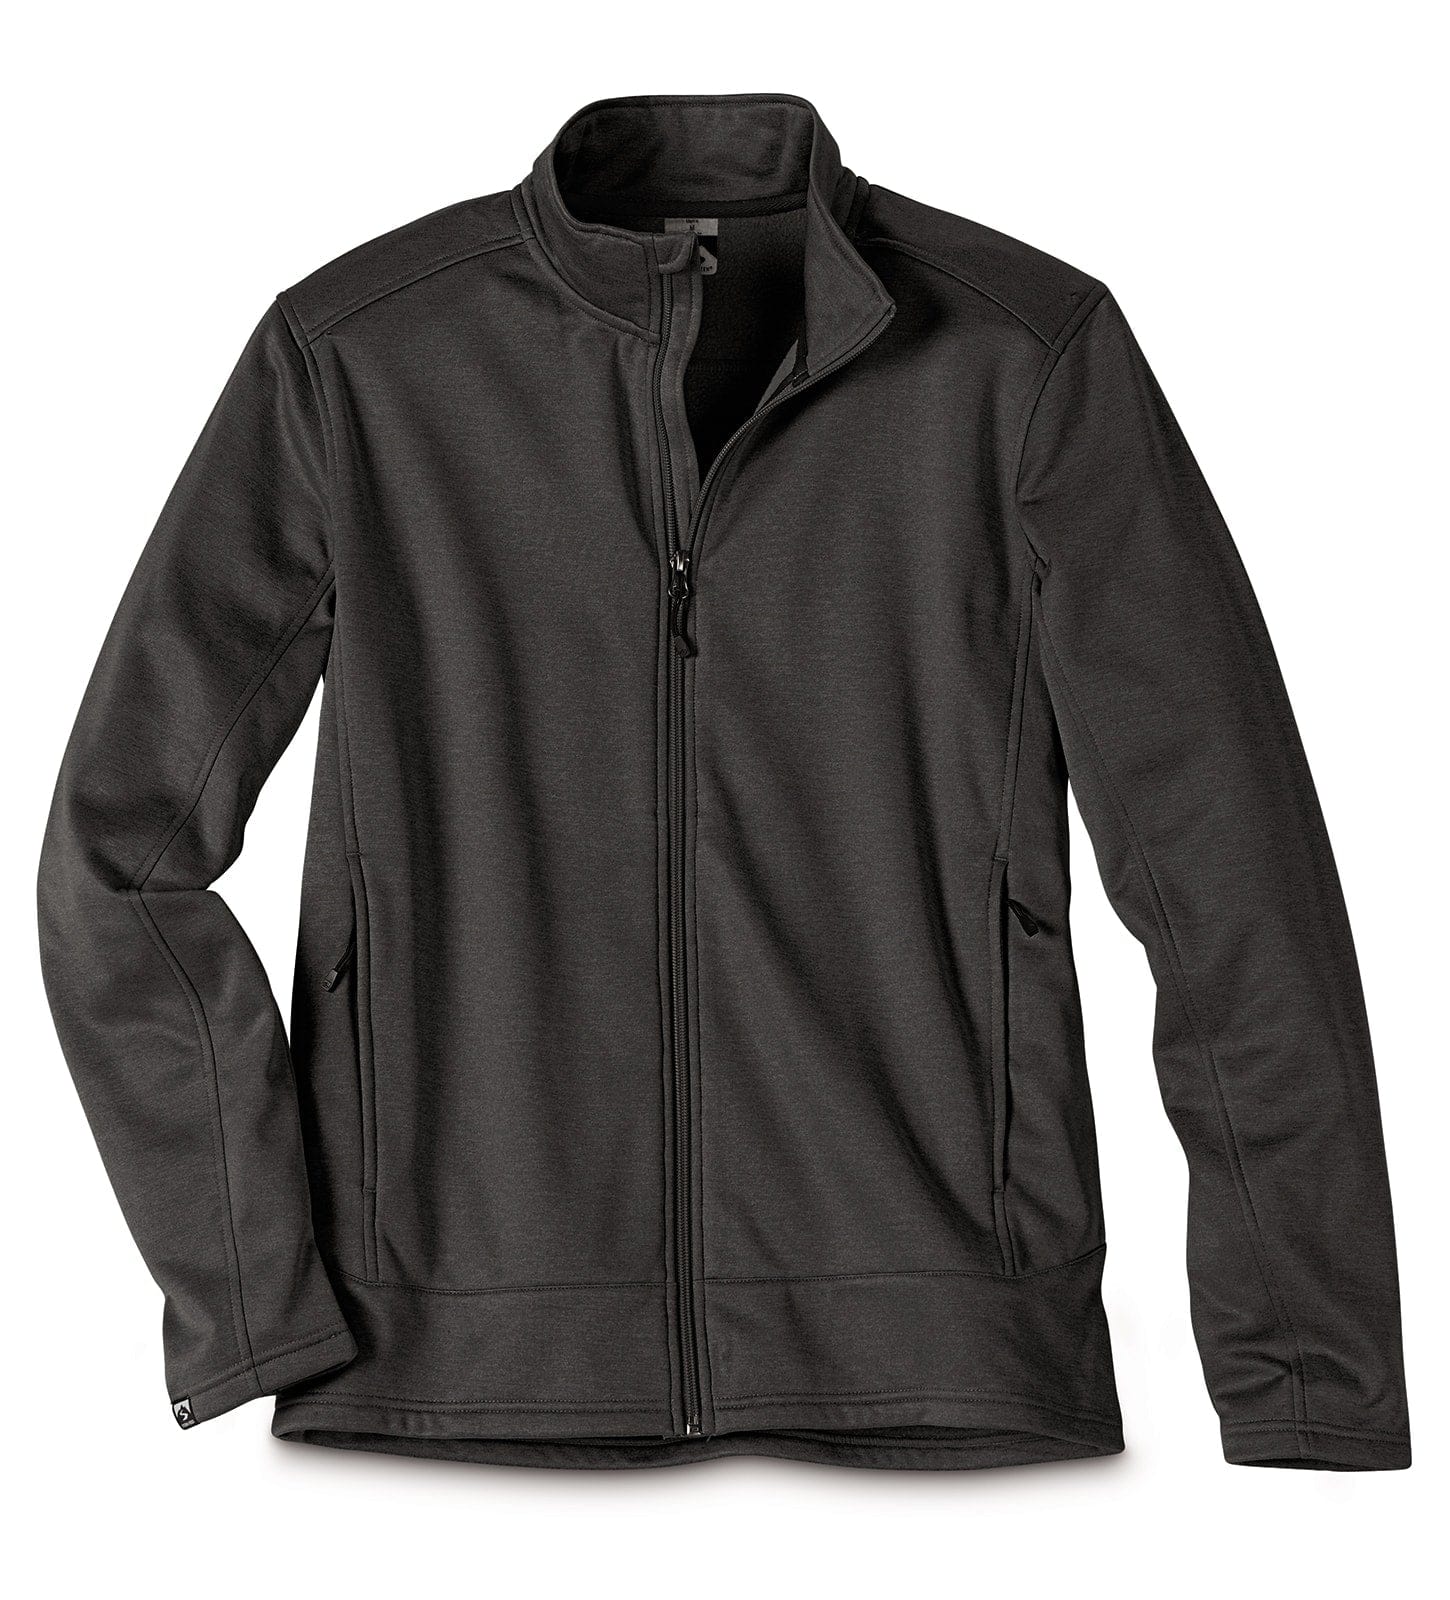 Storm Creek Men's Stabilize performance fleece jacket in gray.